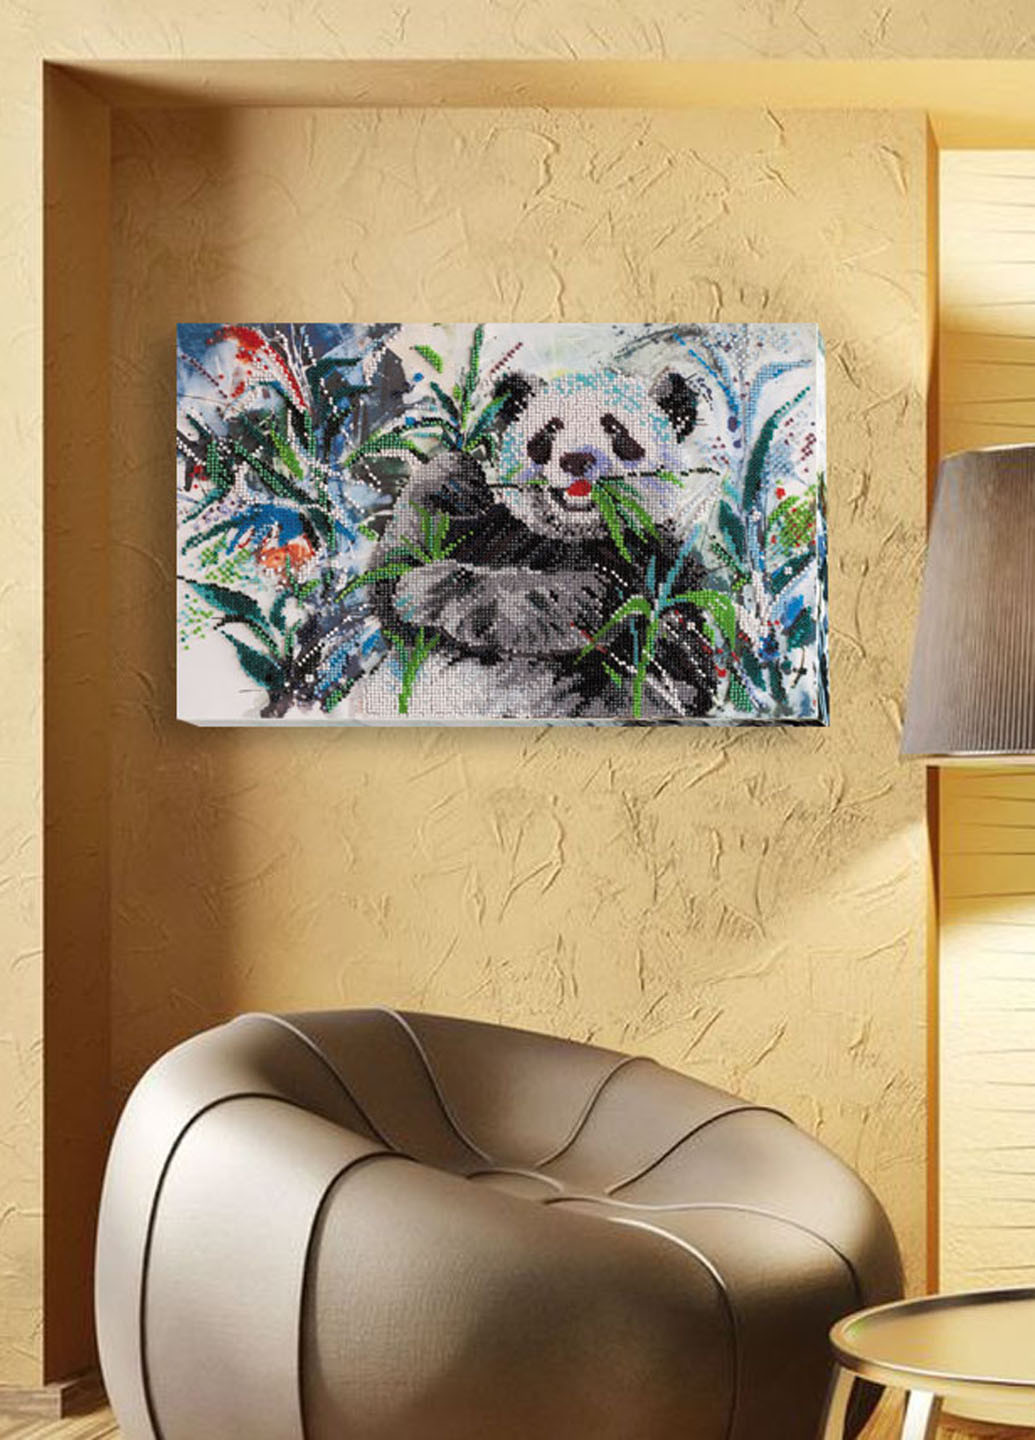 Набор для вышивки бисером Бамбуковый медведь, 35х22 см Abris Art (286206851)